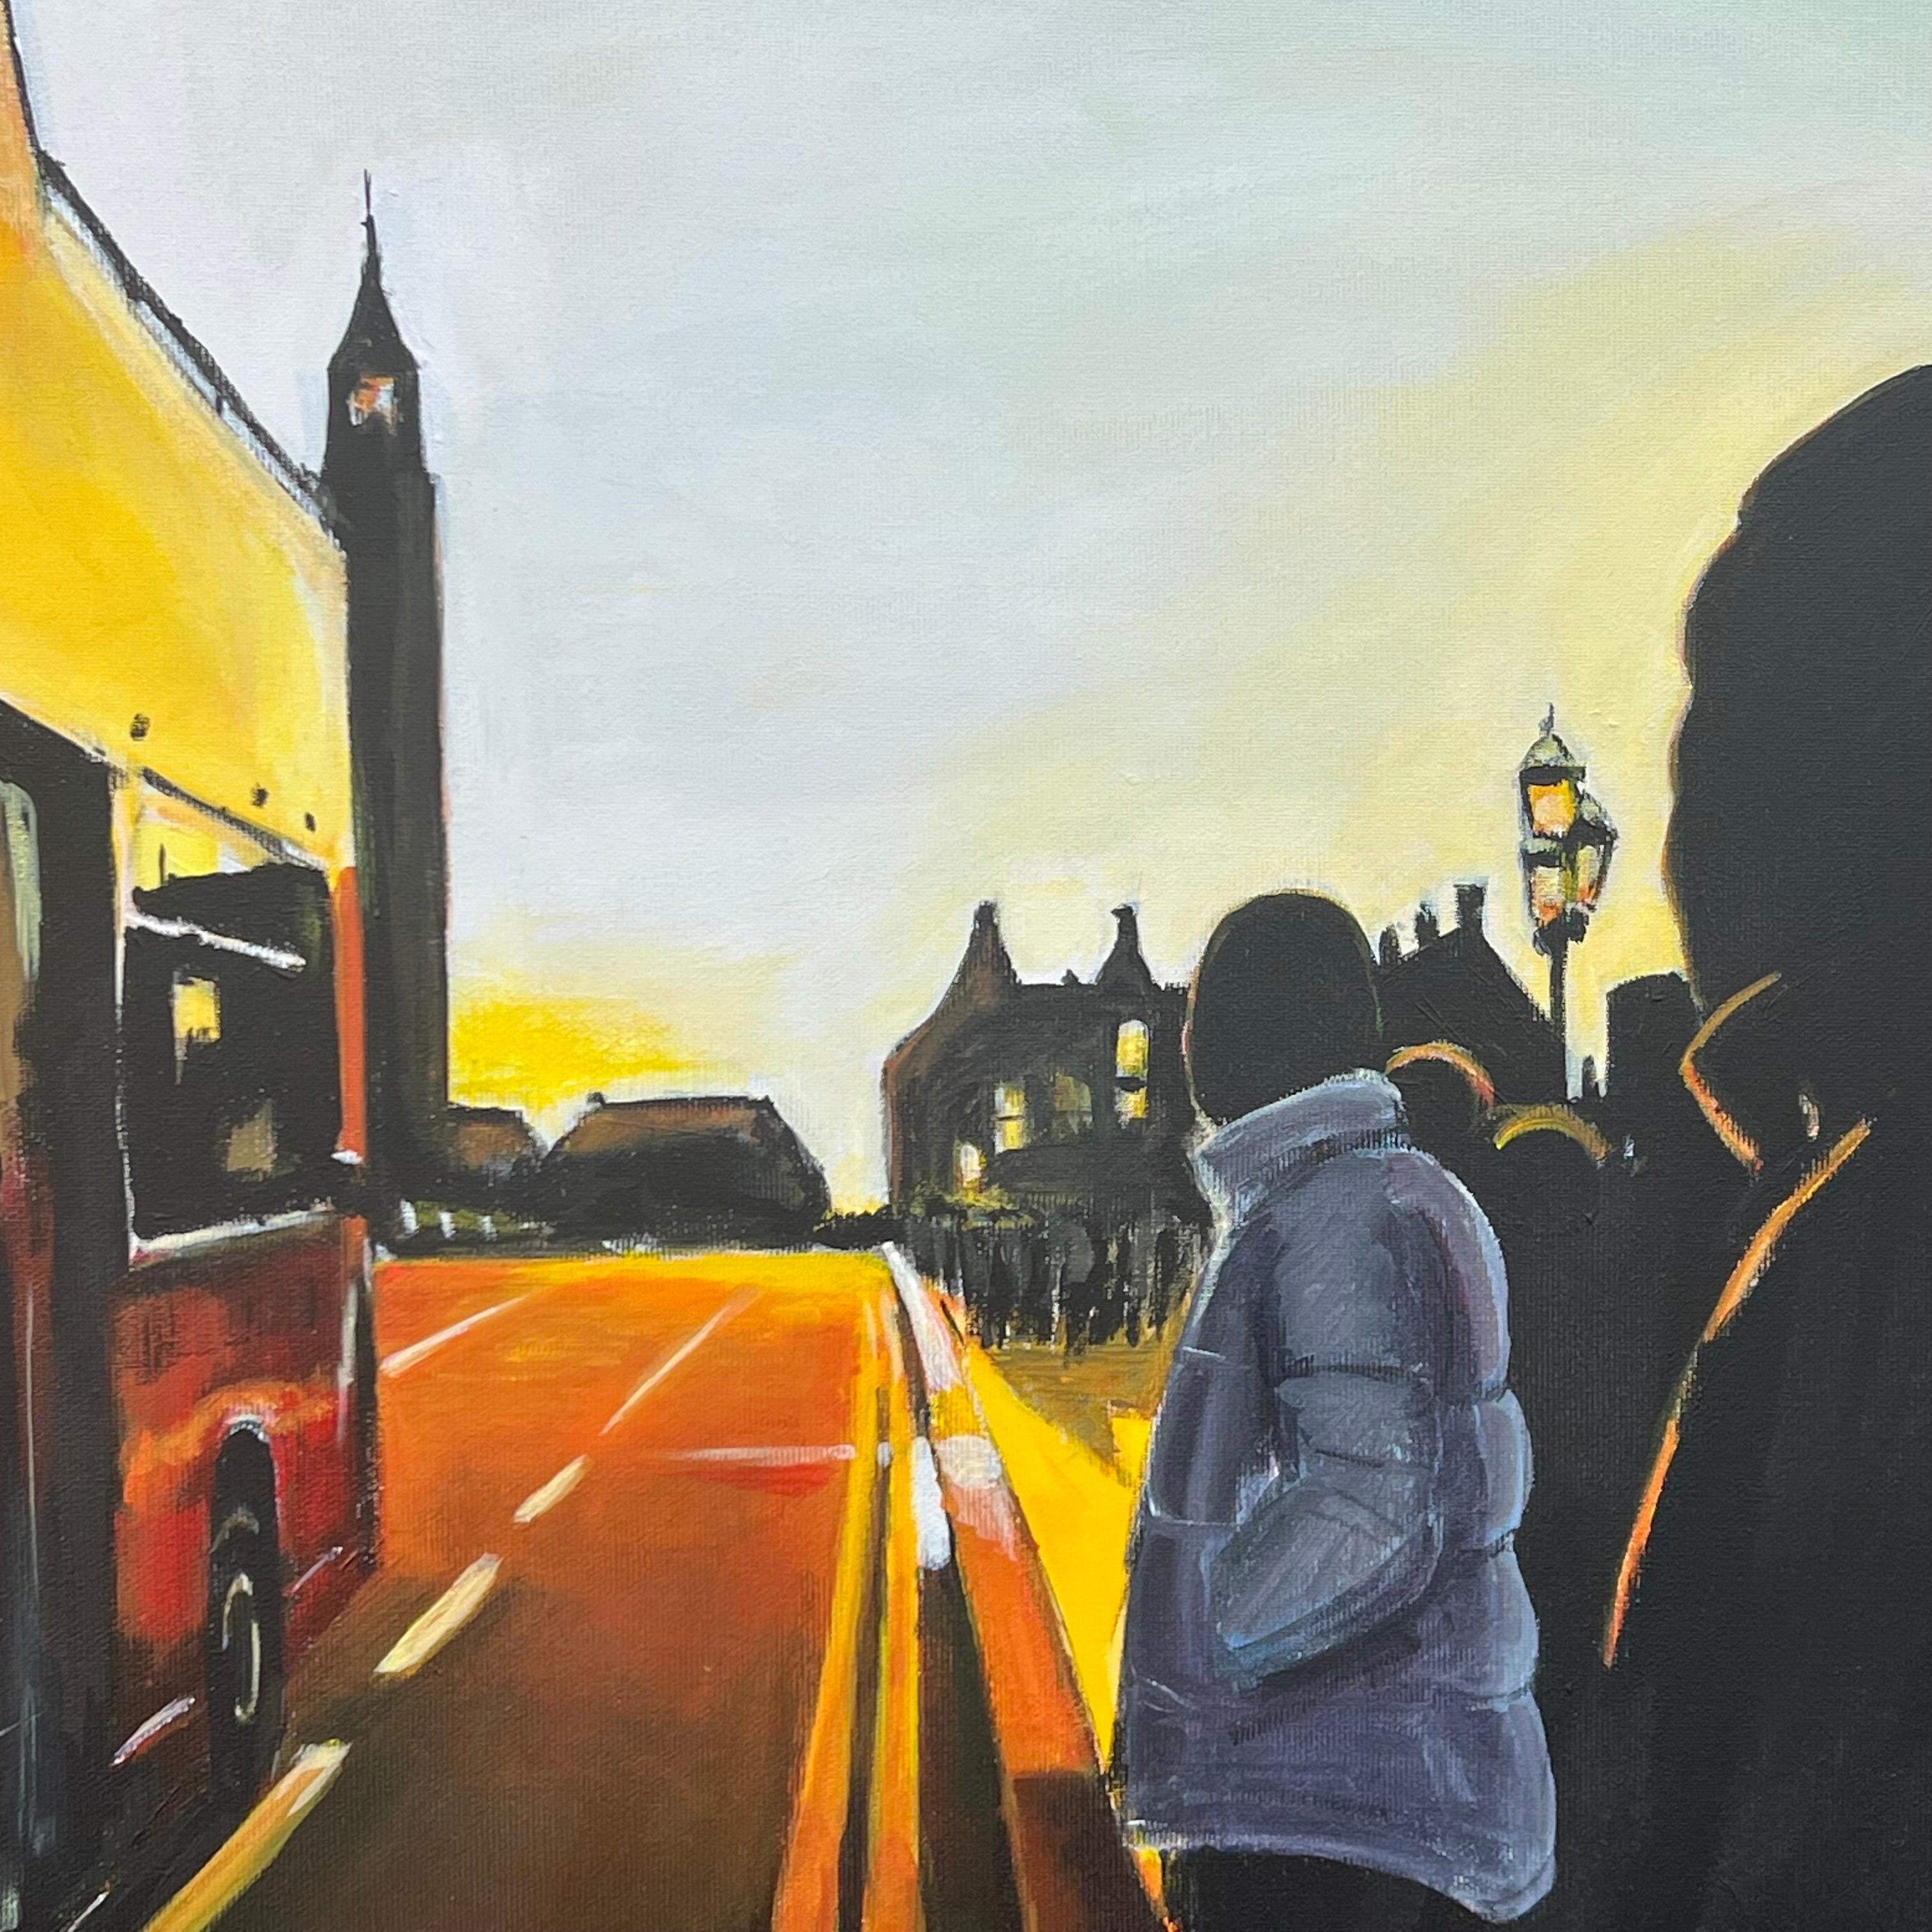 Westminster-Sonnenuntergang in London mit offenem Bus von Angela Wakefield, einer britischen Künstlerin für Stadtlandschaften

Kunst misst 24 x 24 Zoll (ungerahmt) 
Hochwertiges italienisches Box-Canvas 

Angela Wakefield hat in den letzten zehn